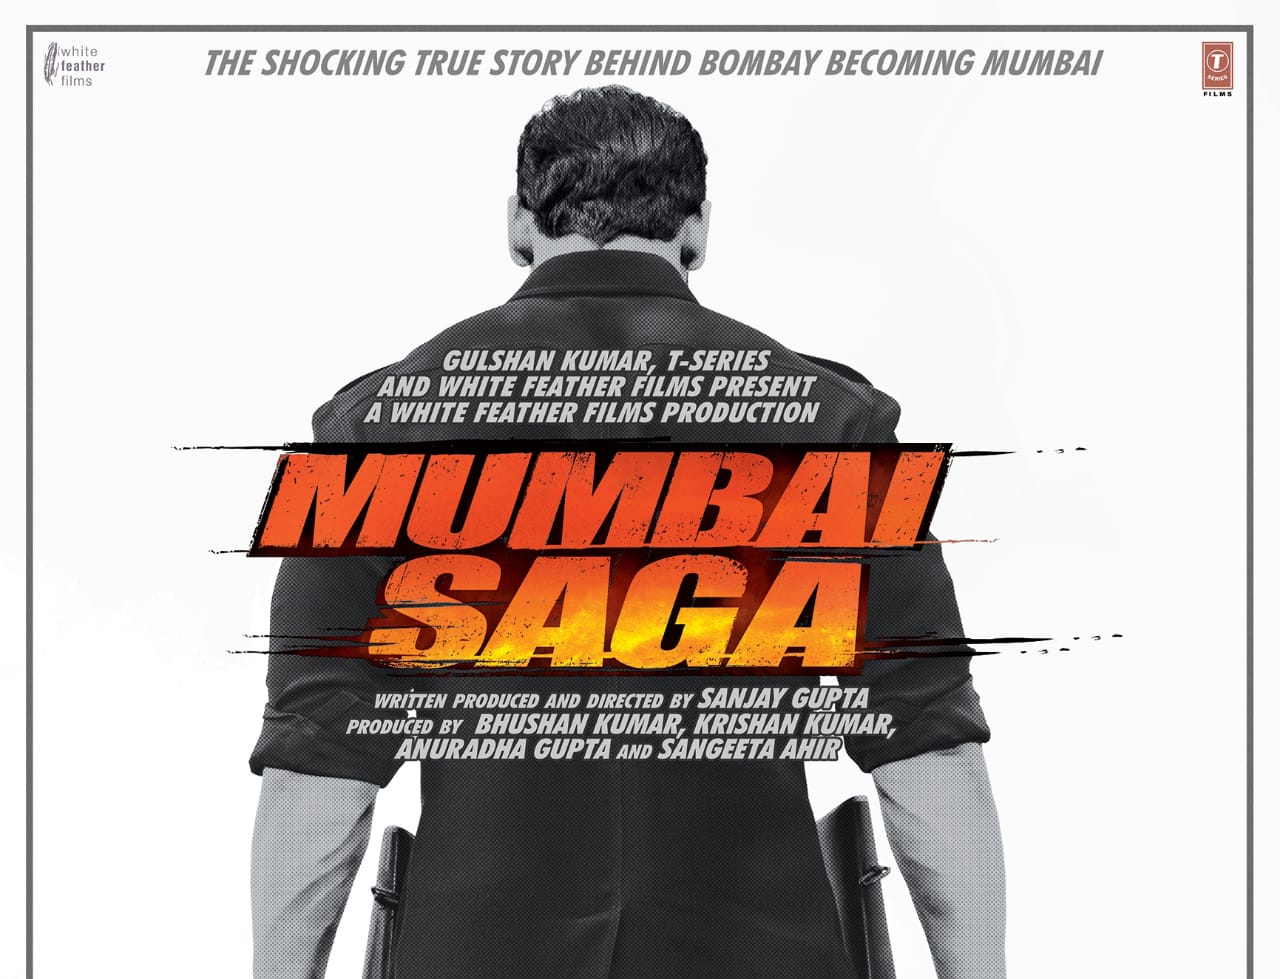 Mumbai Saga to storm cinemas on March 19, 2021!